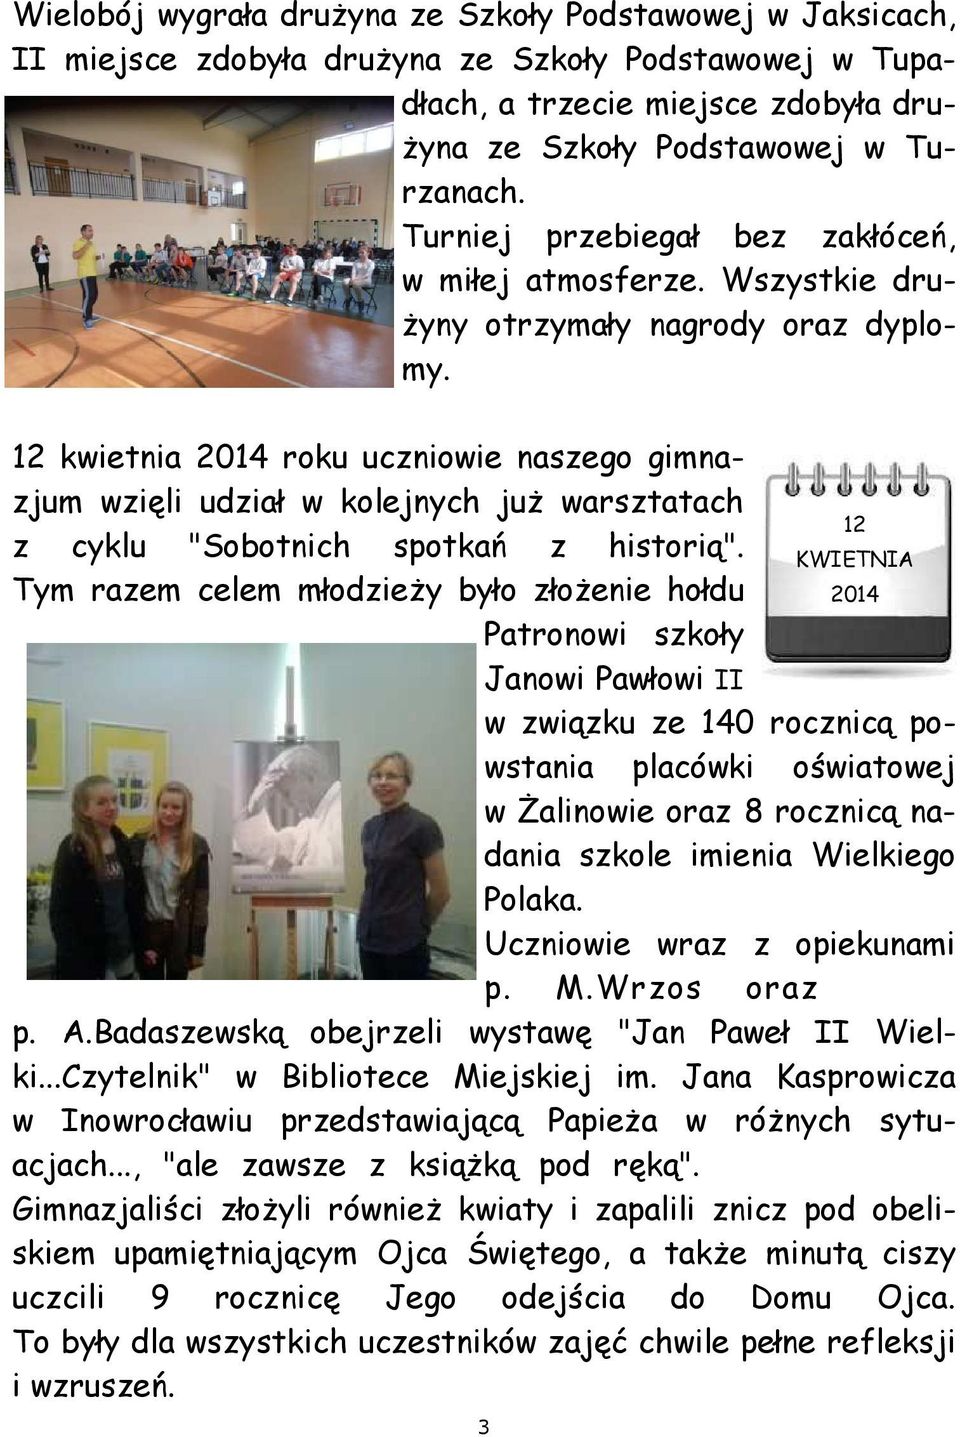 12 kwietnia 2014 roku uczniowie naszego gimnazjum wzięli udział w kolejnych już warsztatach 12 z cyklu "Sobotnich spotkań z historią".